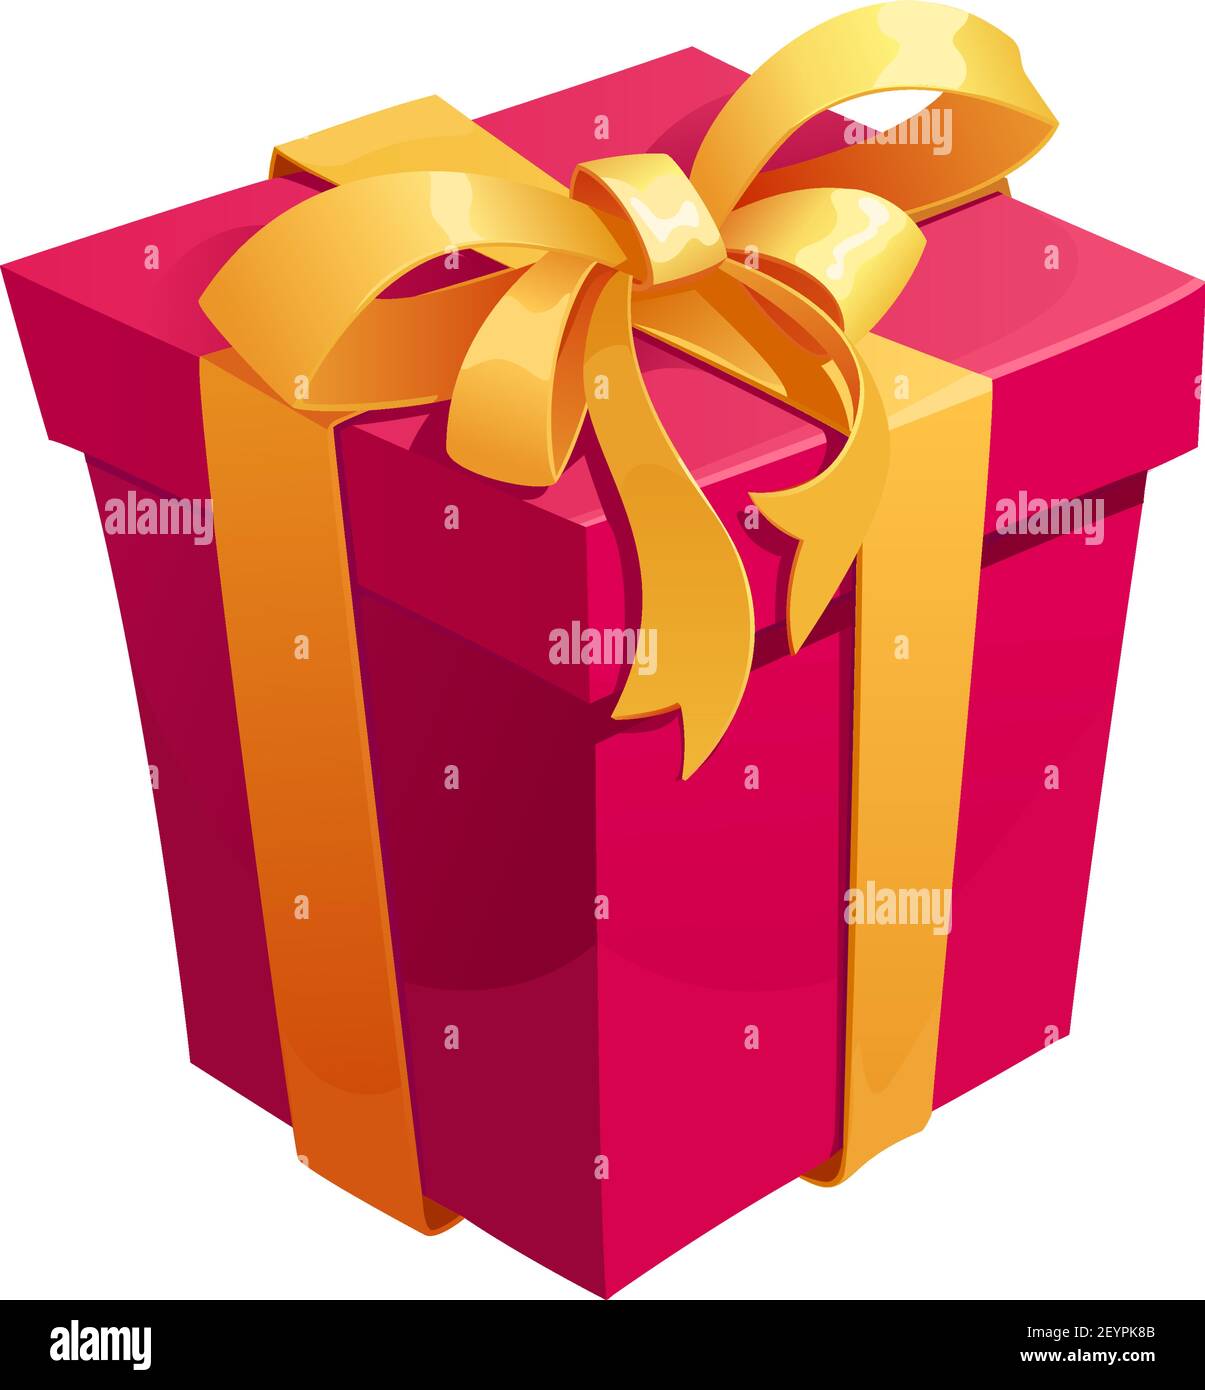 Cuadro de regalo icono de dibujos animados del presente. Caja de regalo y  bolsa de regalo con lazo de cinta para sorpresa de cumpleaños y San  Valentín, Navidad y año Nuevo Imagen